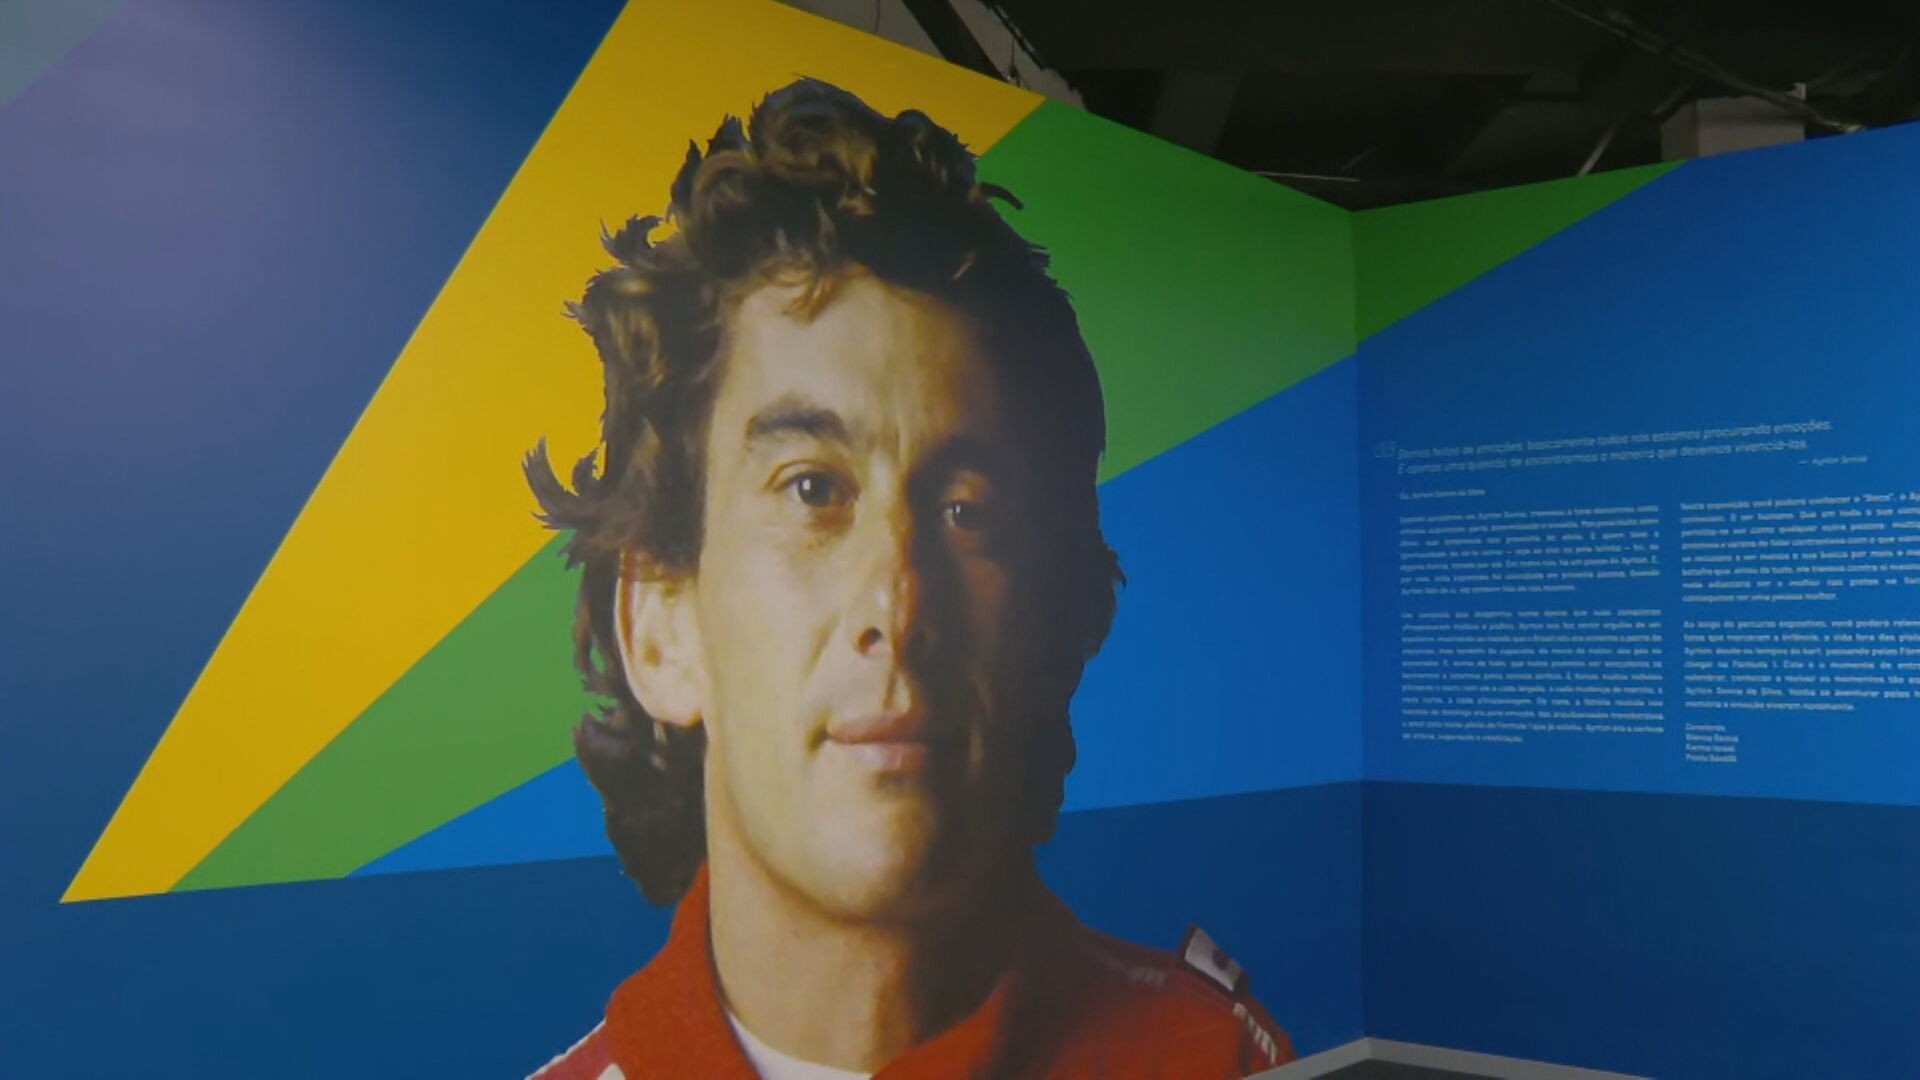 Mostra sobre Ayrton Senna em cartaz no Rio recria voz do piloto com inteligência artificial